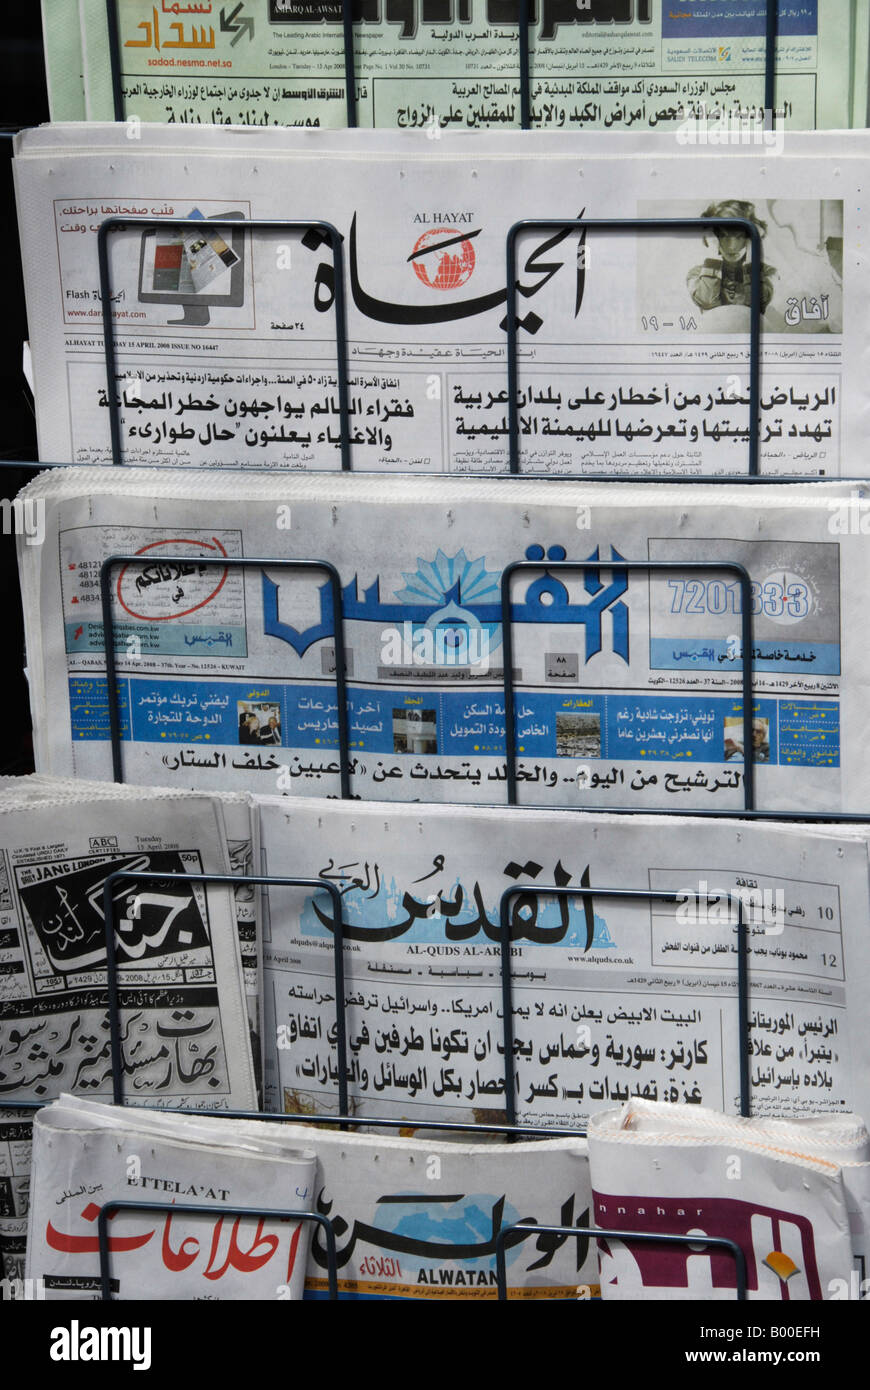 Arabische Sprache Zeitungen in London Stand Stockfoto